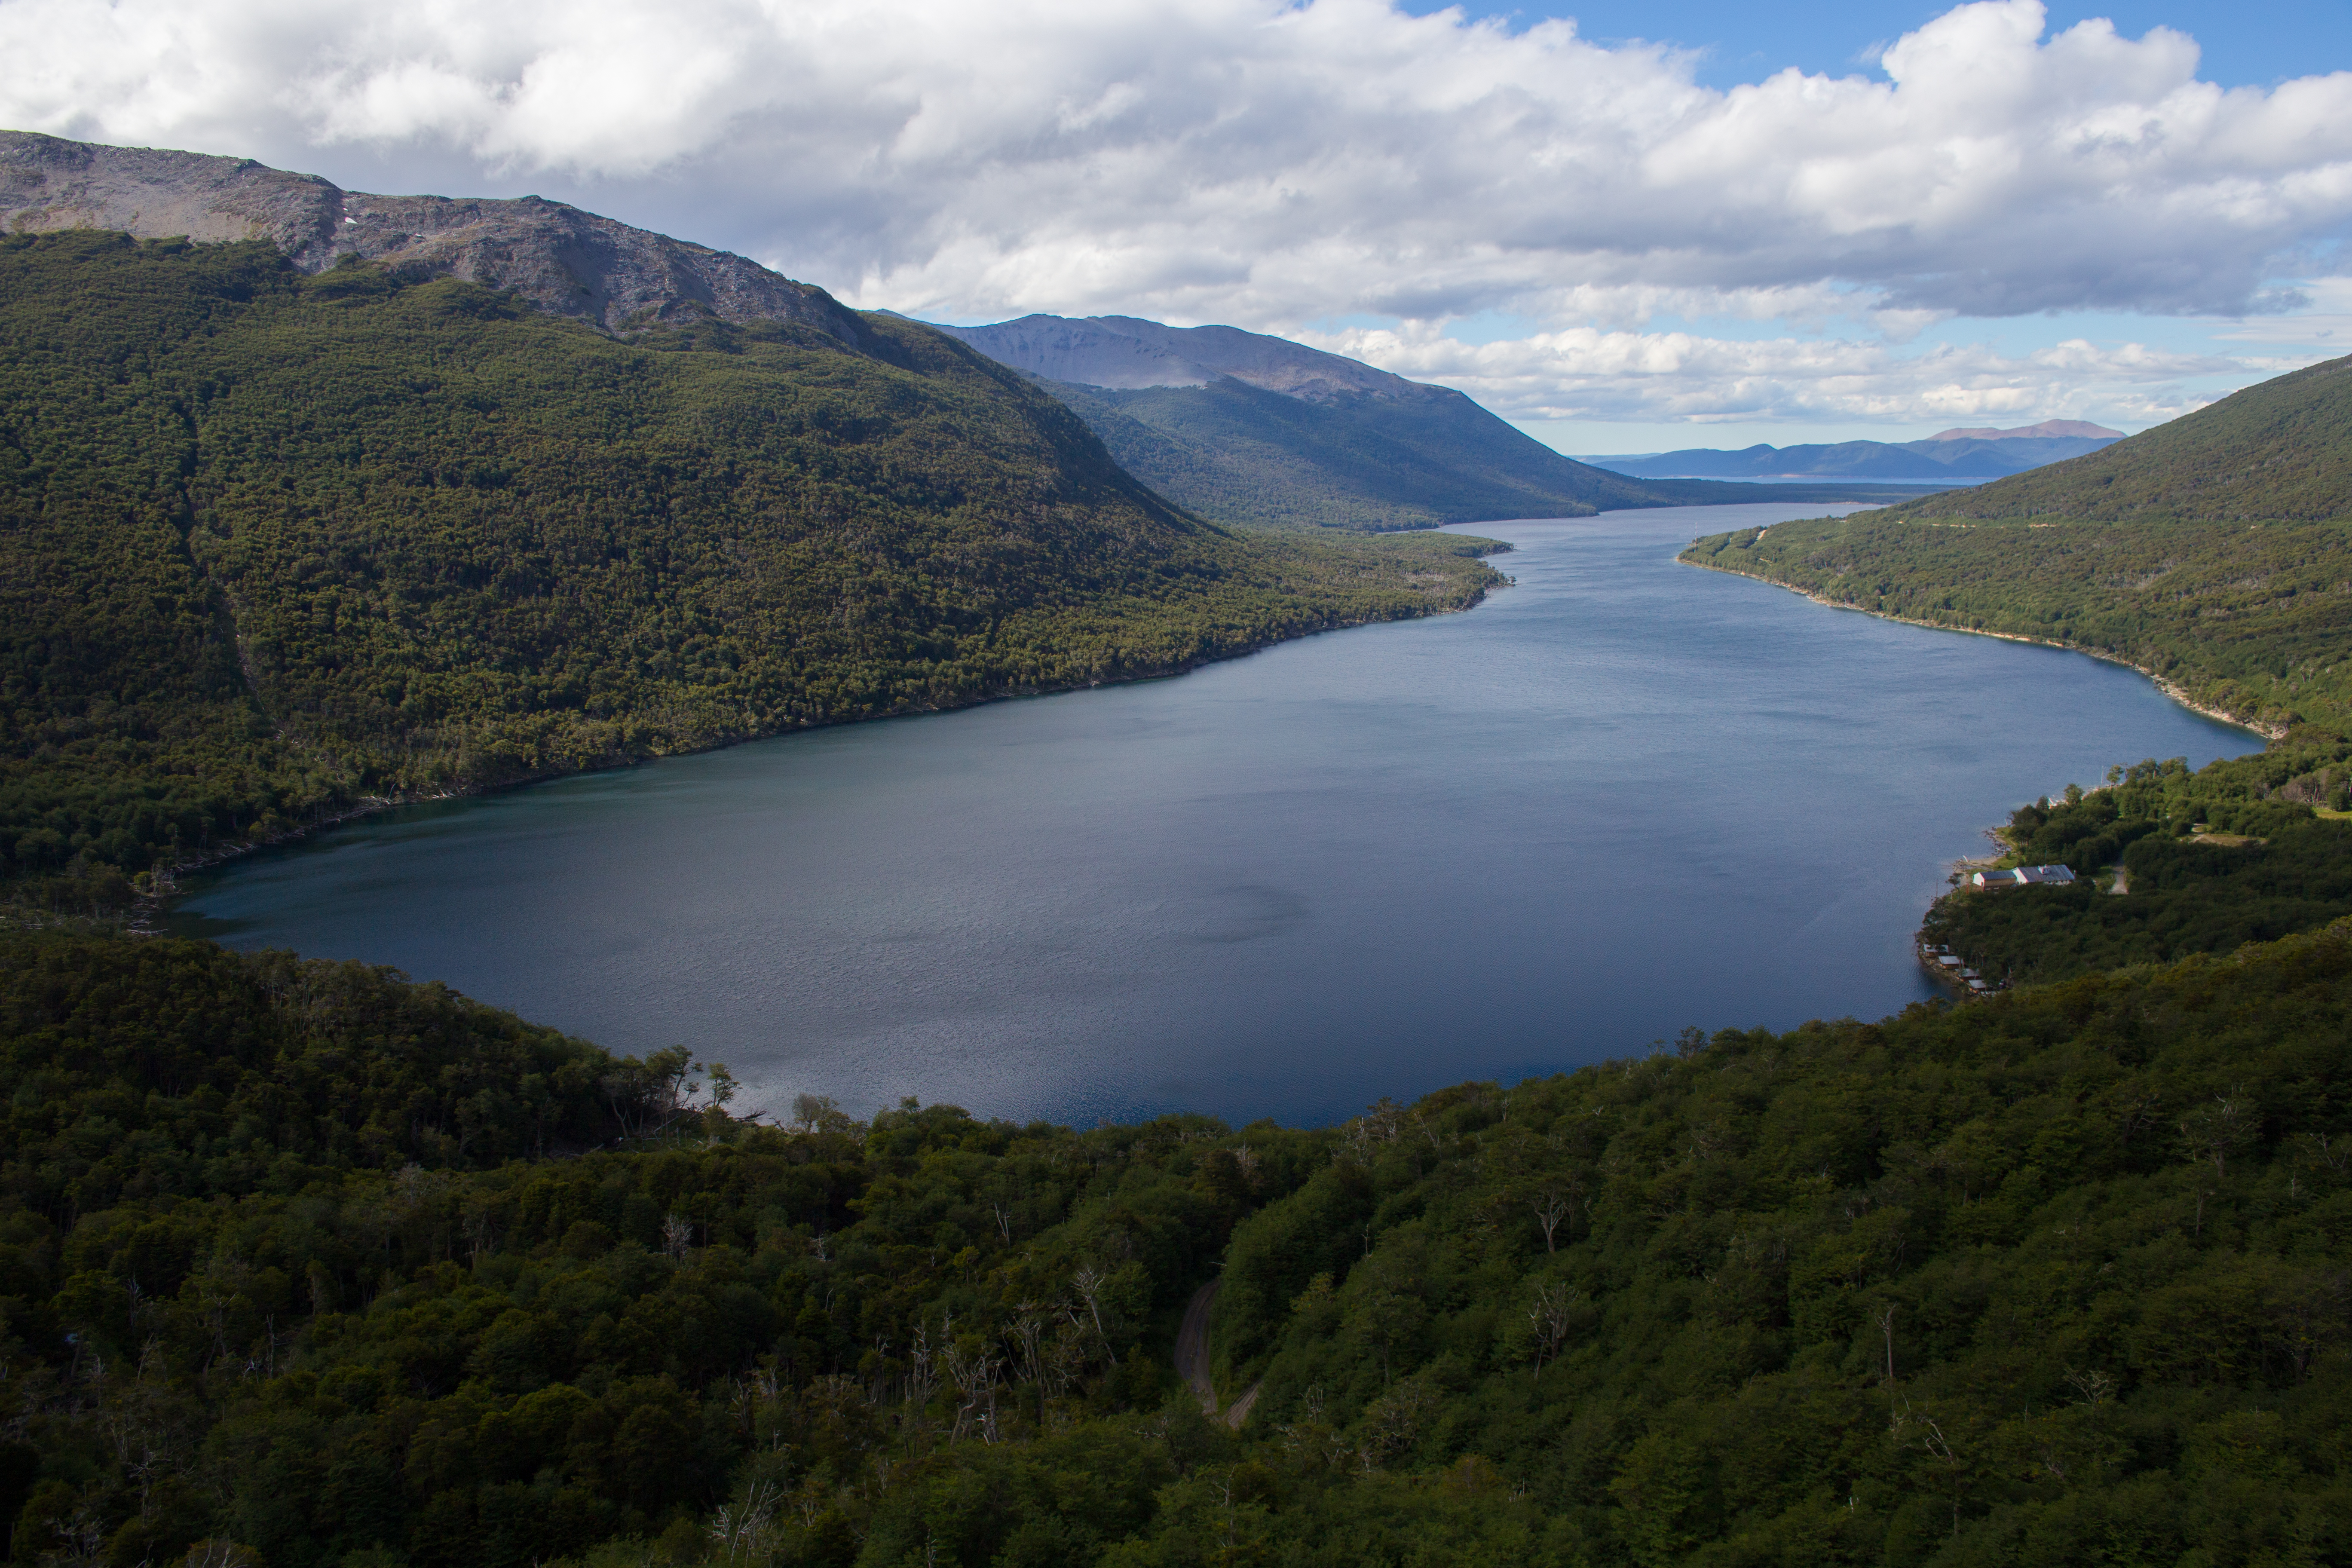 Lake Lago Fagnano - Tierra del Fuego view, Argentina